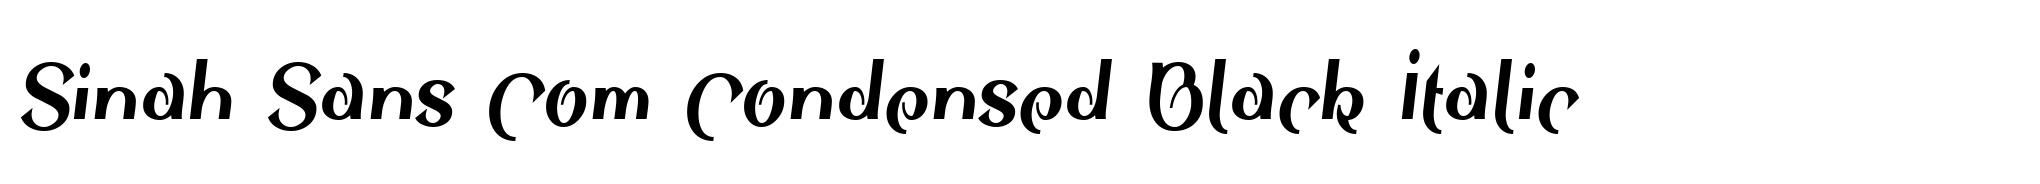 Sinah Sans Com Condensed Black Italic image